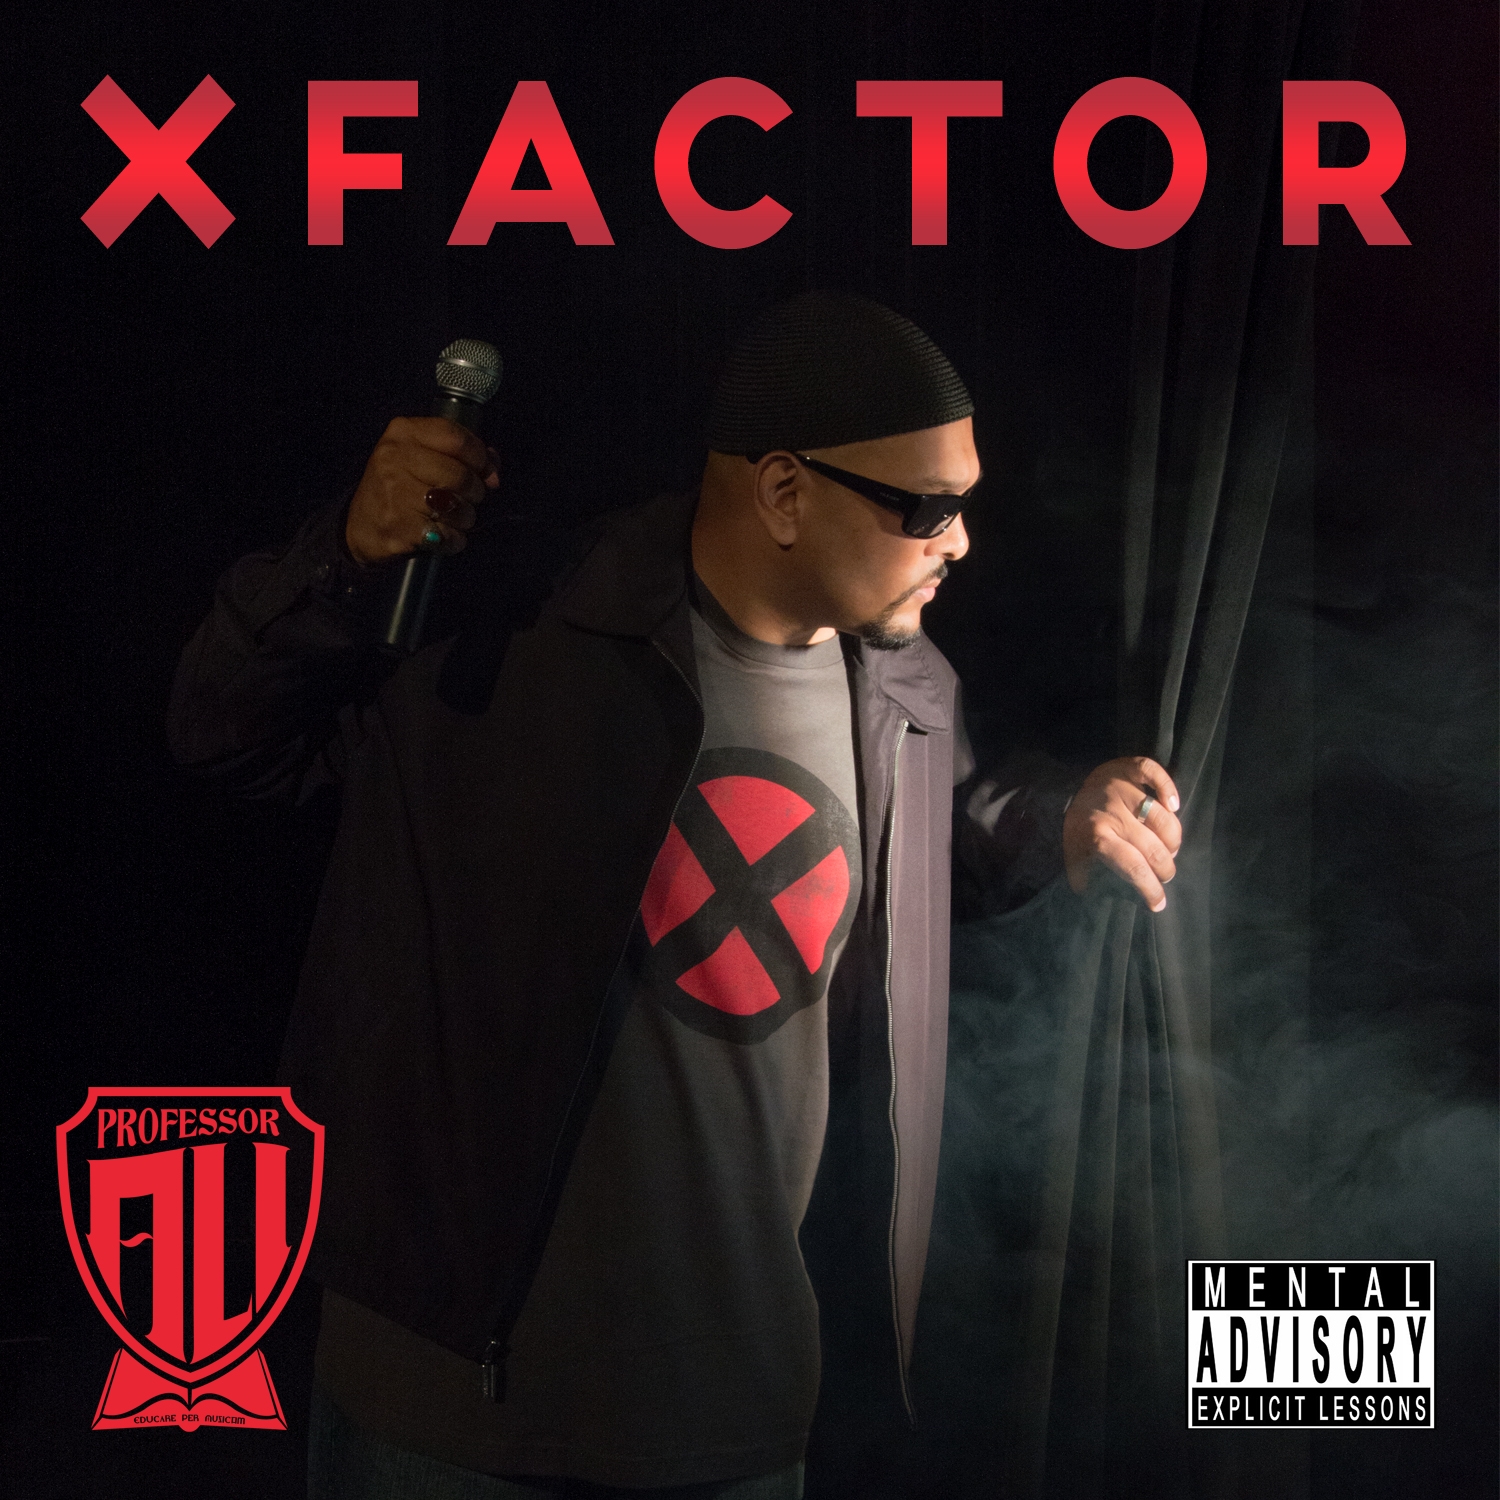 XFactor